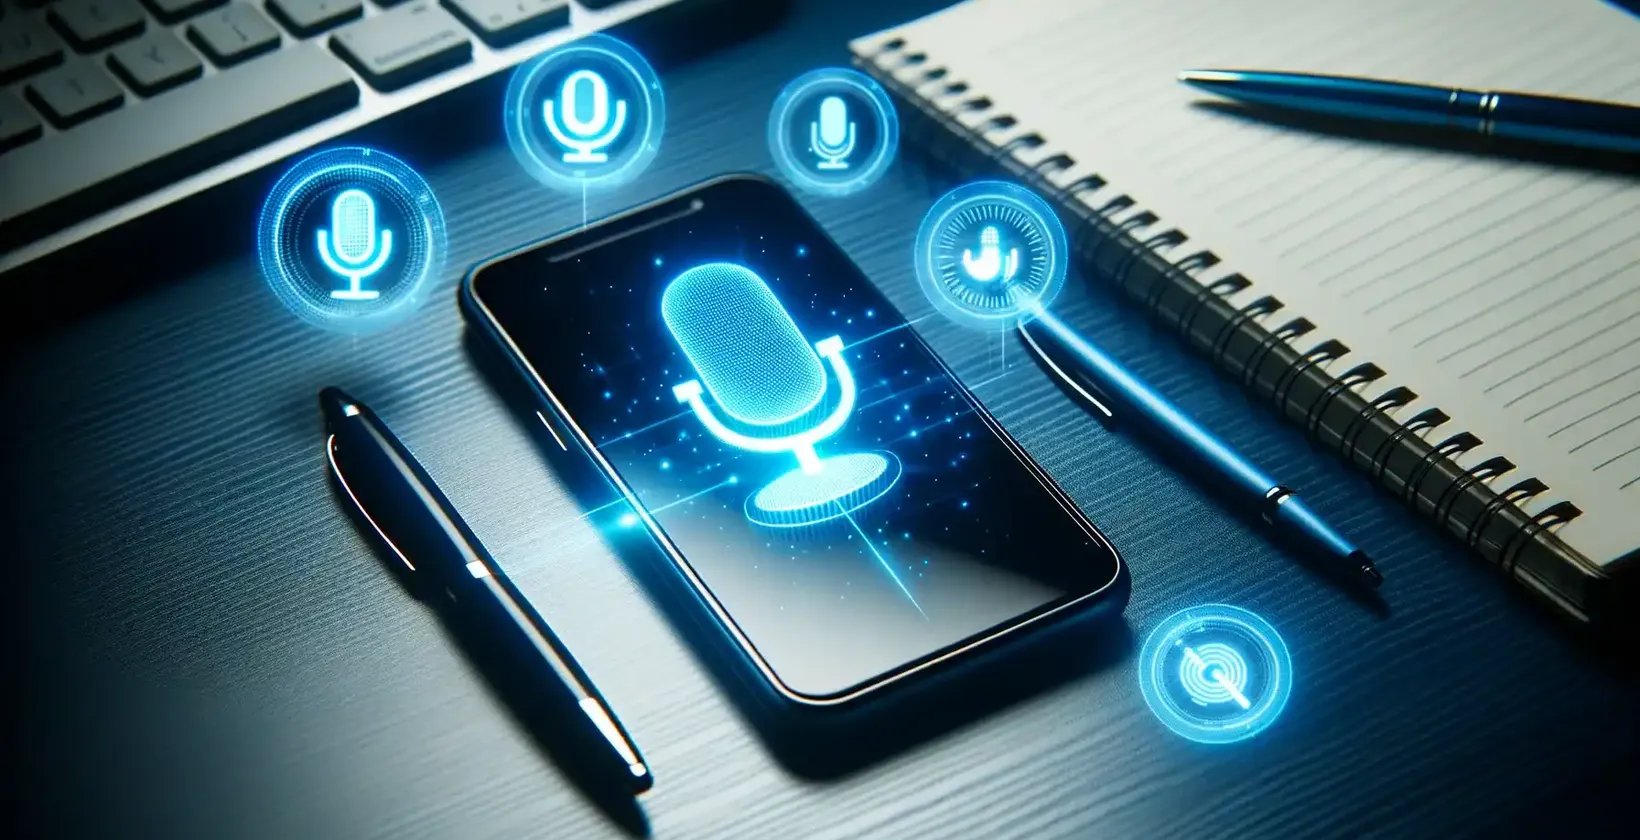 Přidávání textu do videa na zařízeních Samsung ilustrované smartphonem Samsung zobrazujícím symboly hlasových příkazů na stole